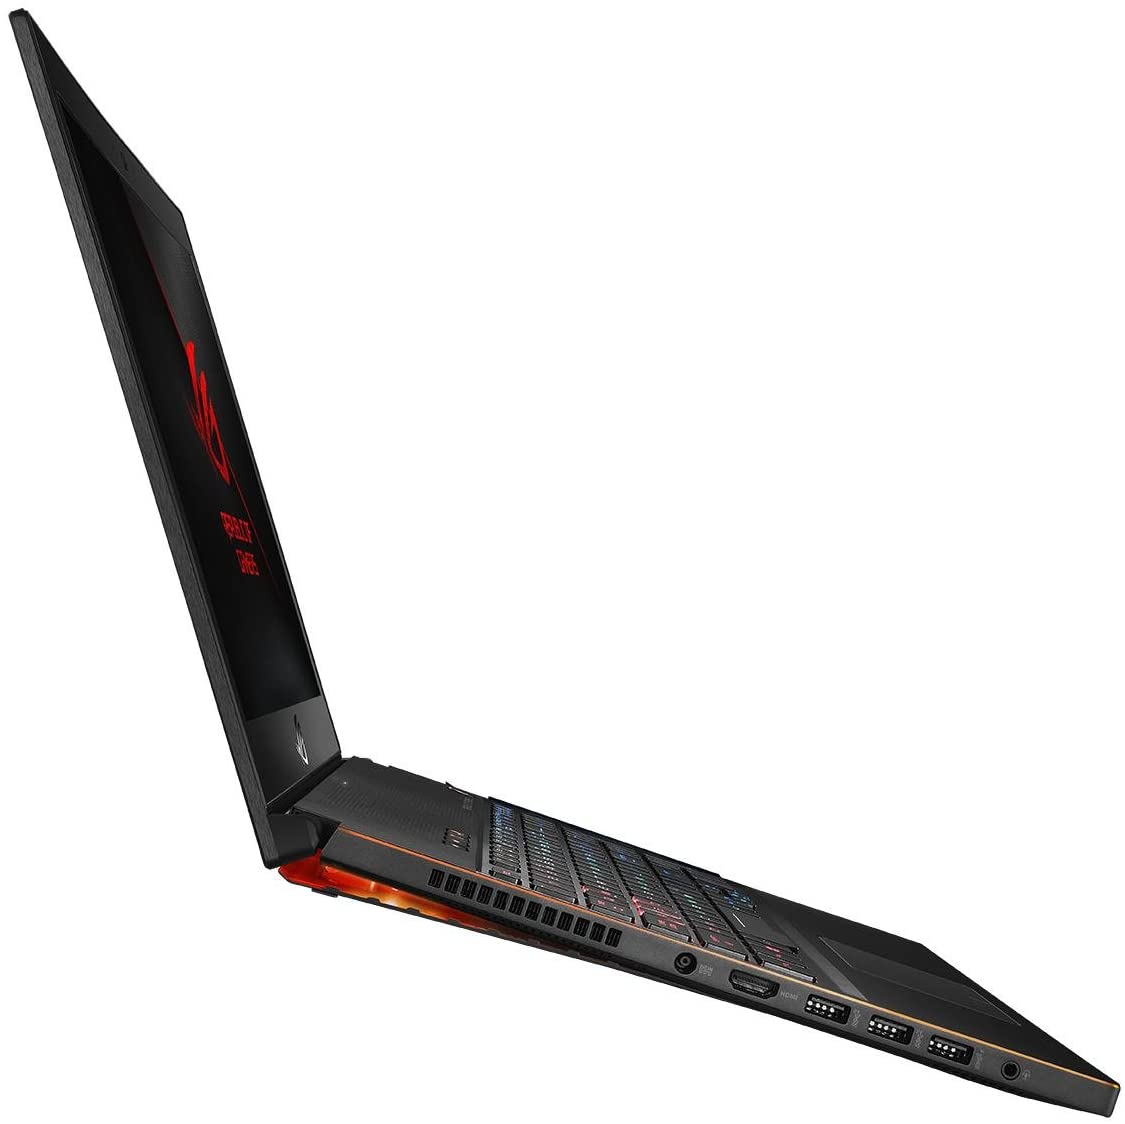 ASUS ROG Zephyrus GM501GS-EI003T 15.6" FHD Laptop Intel Core i7-8750H, 16GB RAM